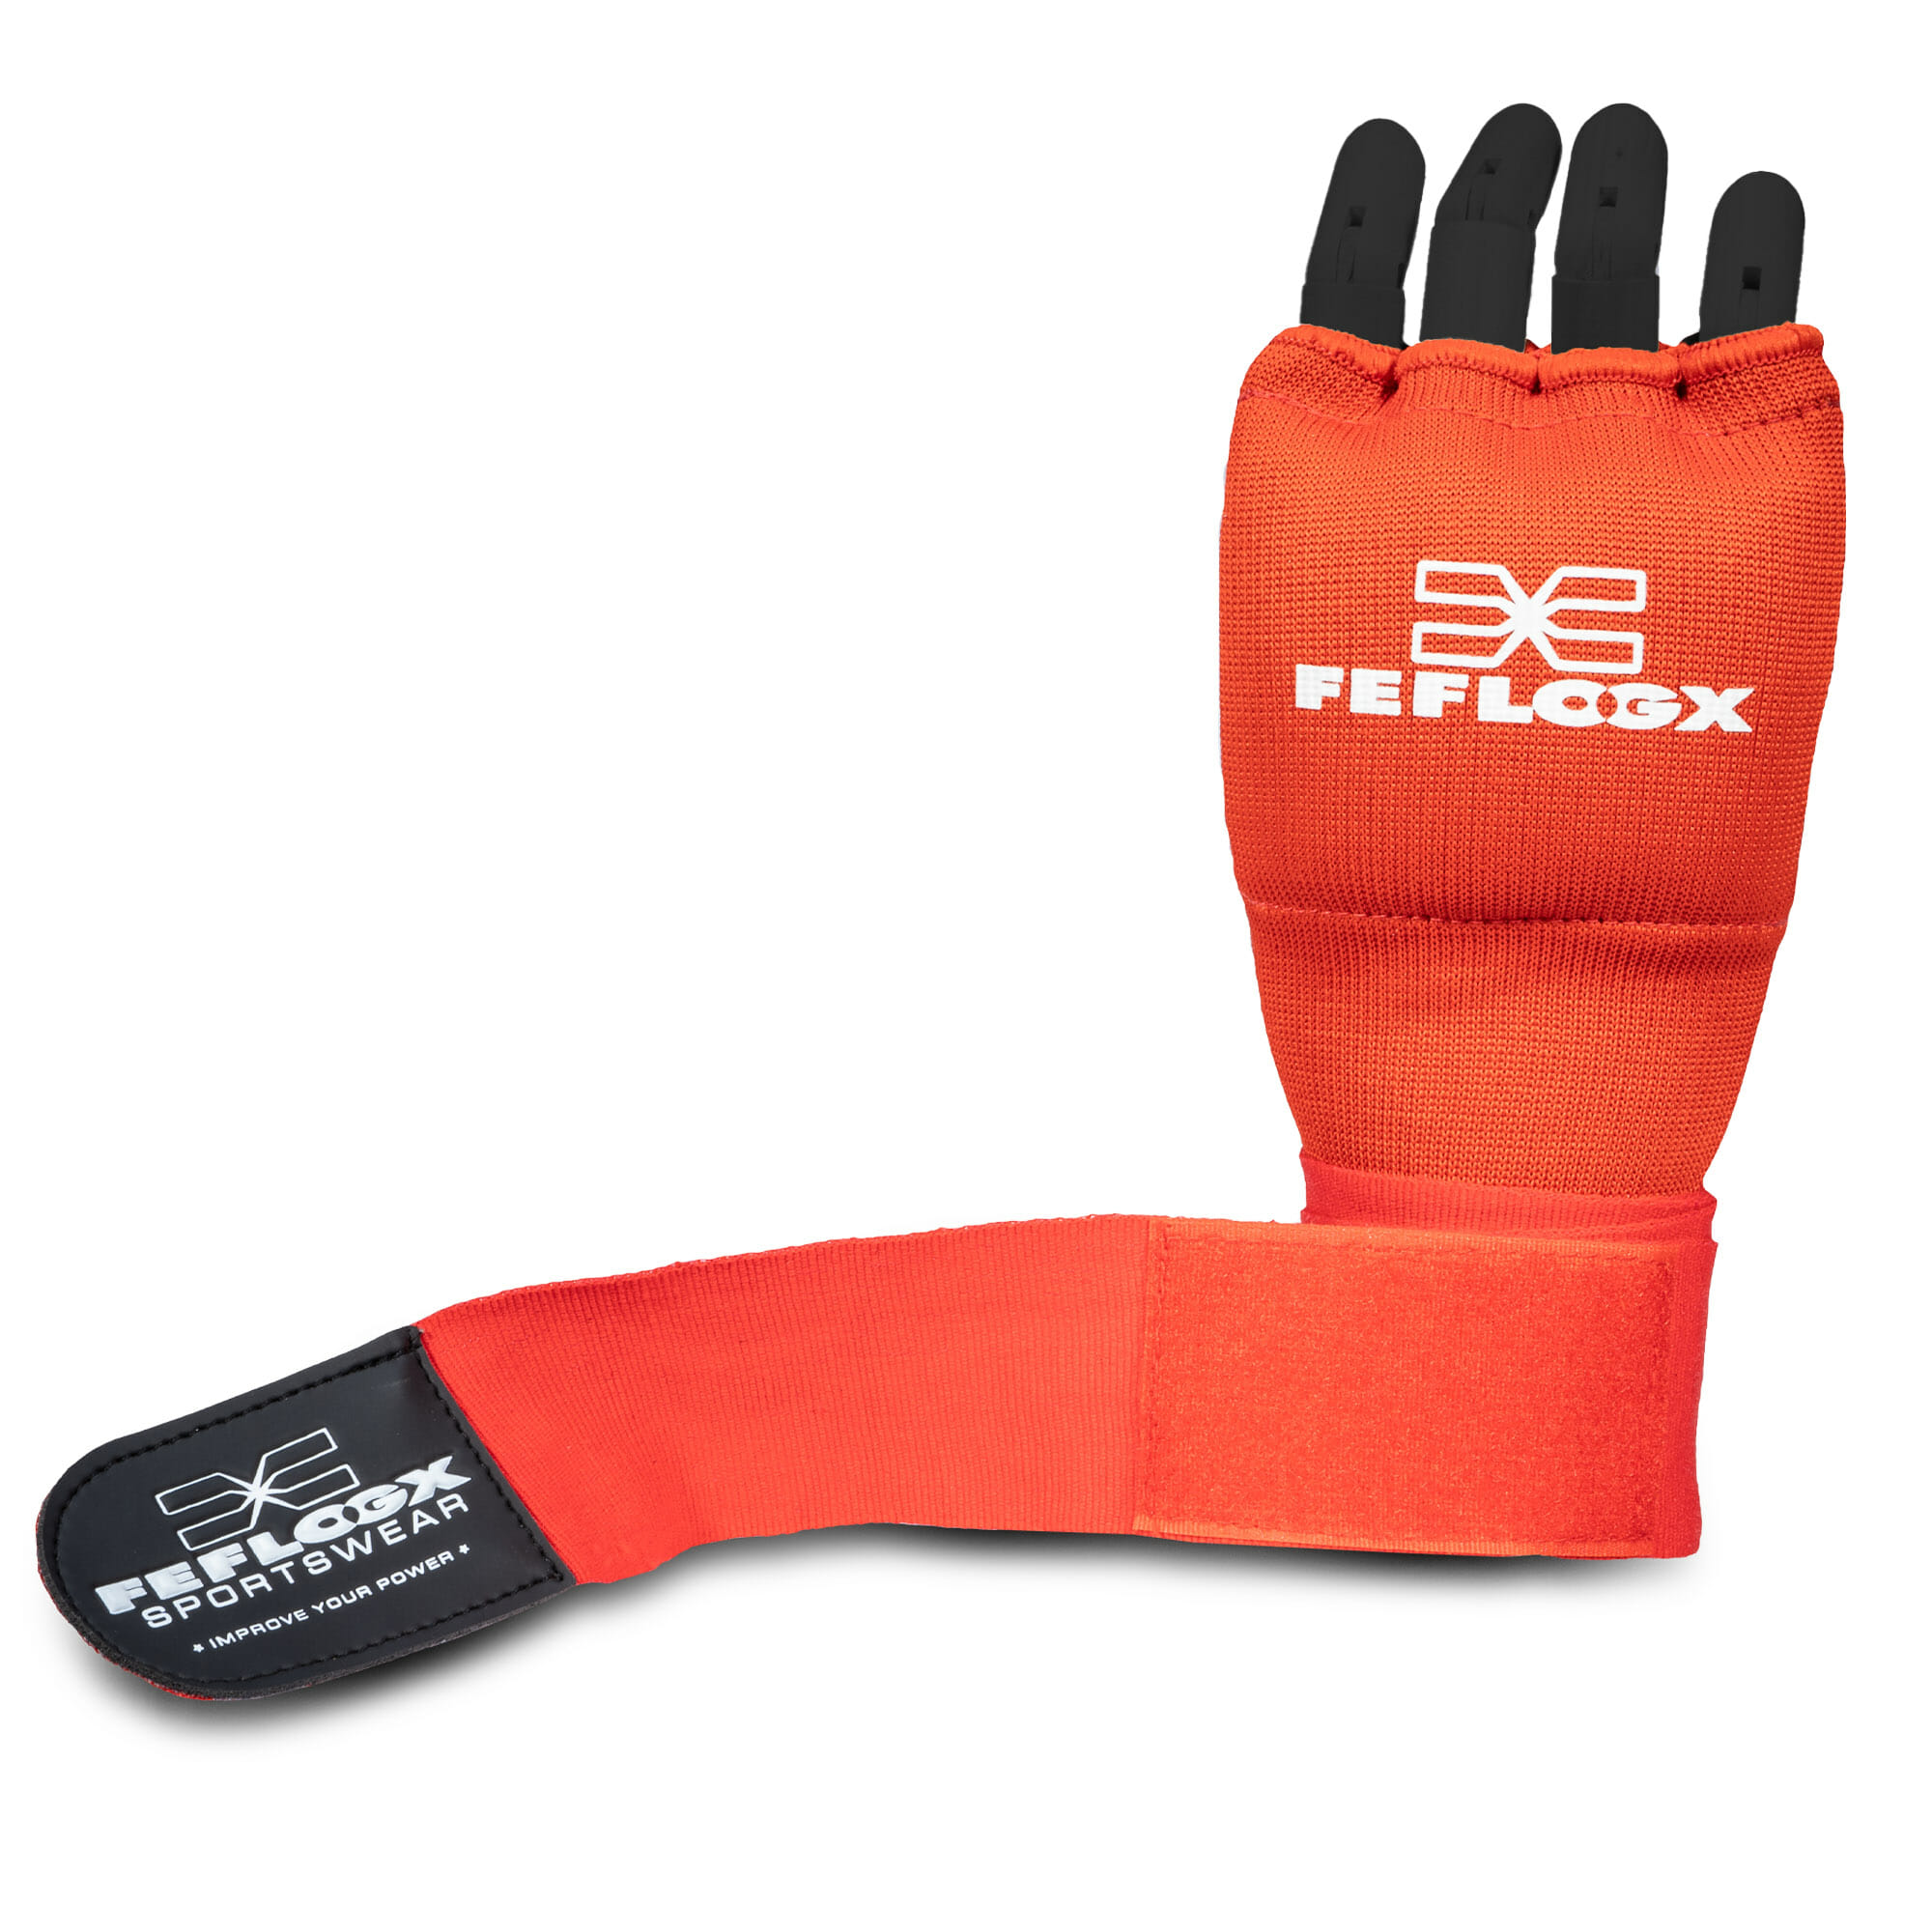 Bandagen Handschuhe Profi by FFX